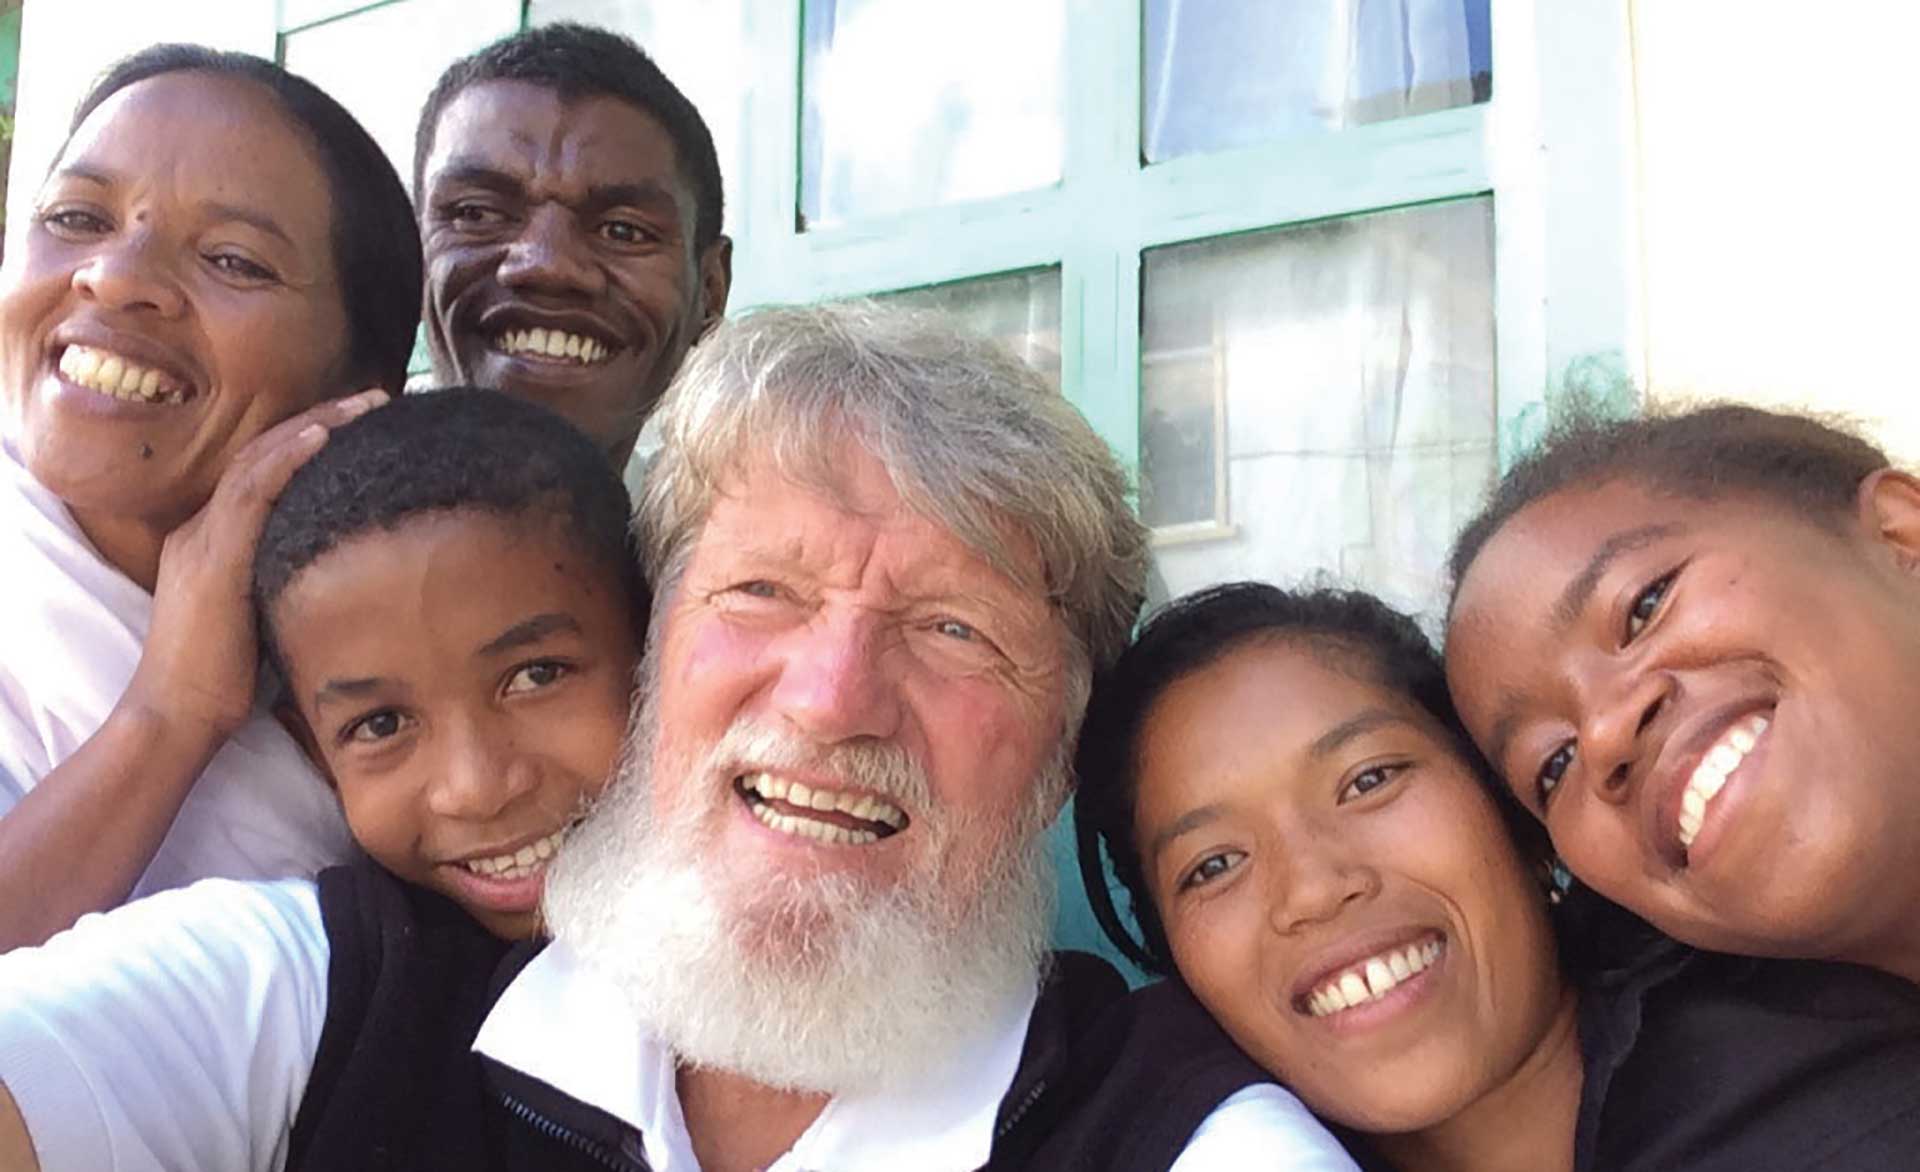 El sacerdote ya tiene 72 años, hace cinco décadas vive en Madagascar y hace treinta años fundó Akamasoa. Según la asociación humanitaria fundada por Opeka, por ejemplo, en 2017 fueron 30.000 las personas que recibieron asistencia temporaria, y más de 13.000 chicos se encontraban escolarizados, desde el nivel inicial hasta el terciario